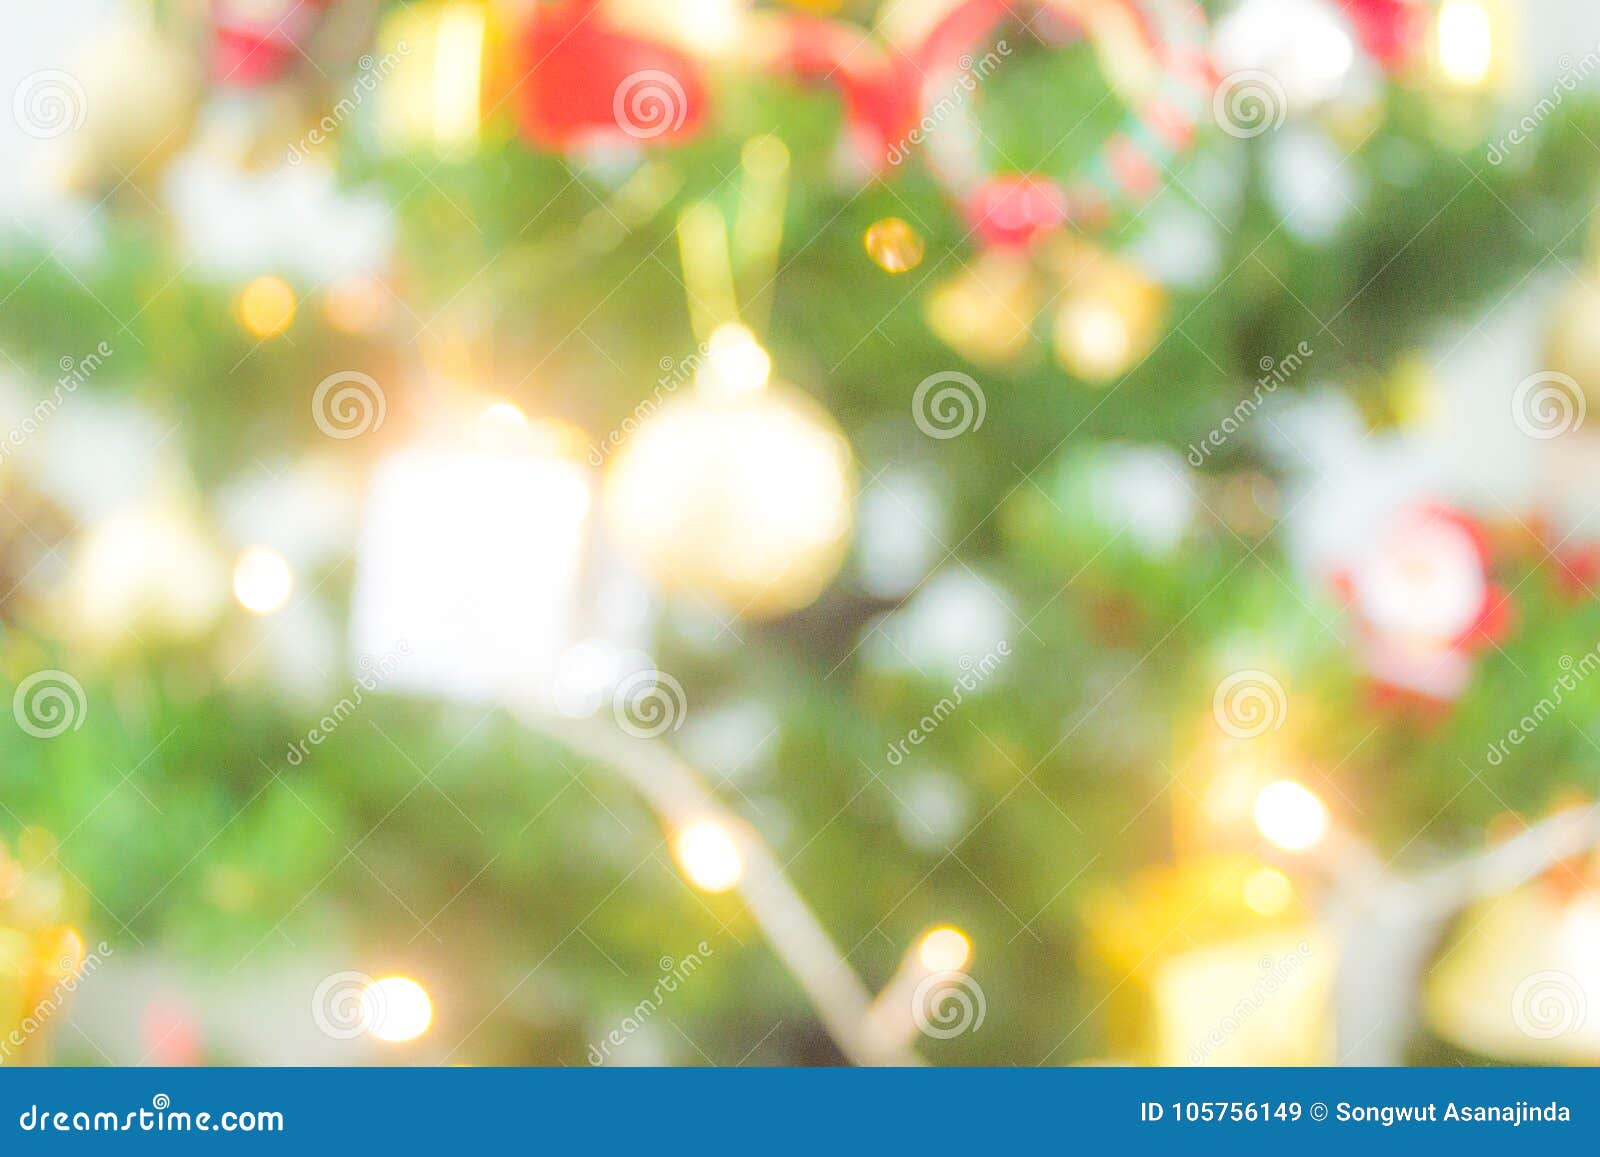 Mùa lễ hội đang đến gần! Hãy xem những hình ảnh về Christmas tuyệt đẹp và lãng mạn để cảm nhận không khí rộn ràng của sự kiện này. Bạn sẽ được chiêm ngưỡng các bức tranh nghệ thuật, hình ảnh đèn lồng và cách trang trí Noel độc đáo. 